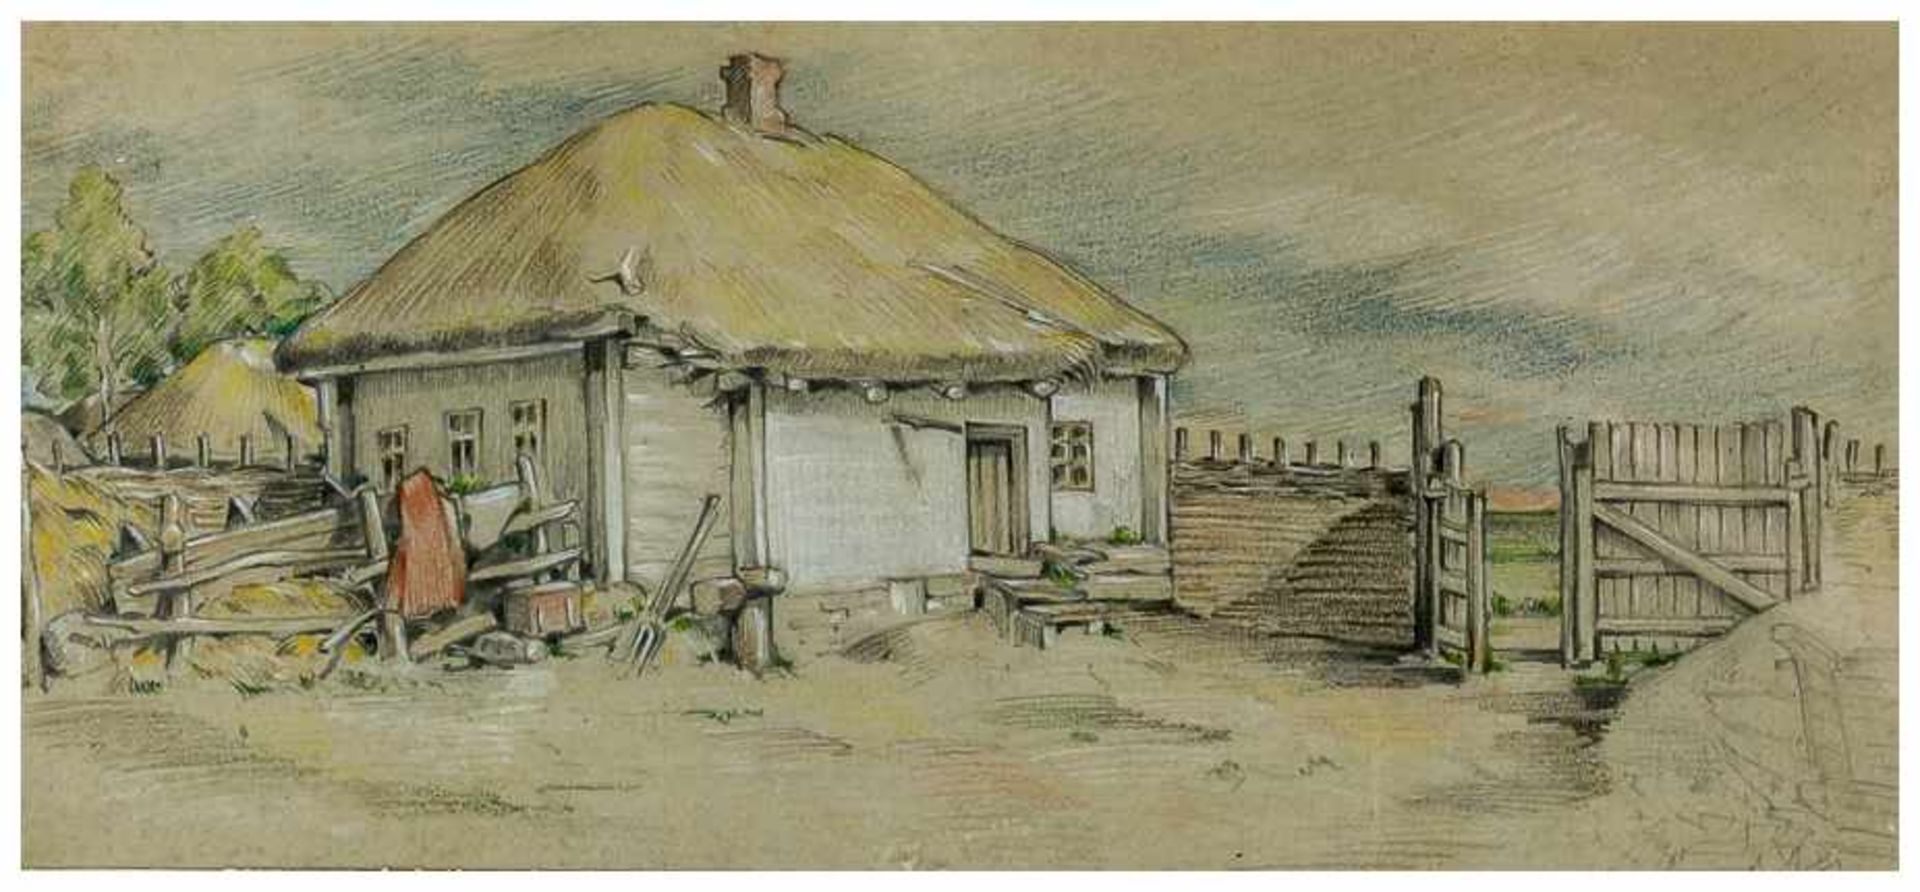 Ukrainisches Dorf Kolorierte Zeichnung, 20. Jh. Bildgrösse: ca. 11,5 x 25 cm, Rahmen: ca. 16,3 x